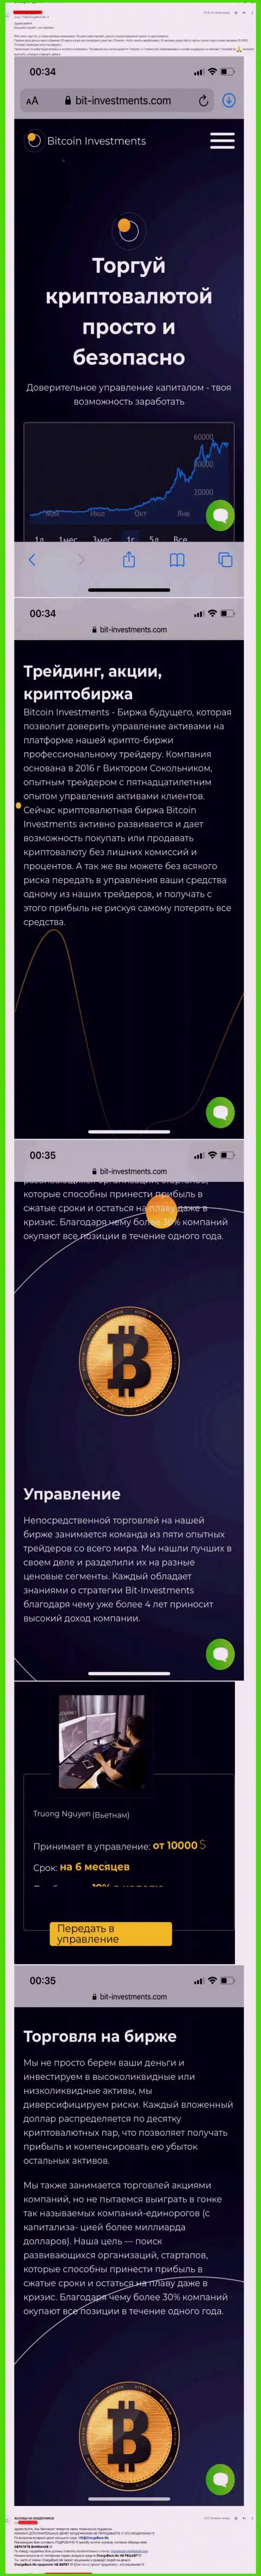 Бегите от Bitcoin Investments как можно дальше, отжимают средства !!! (мнение)